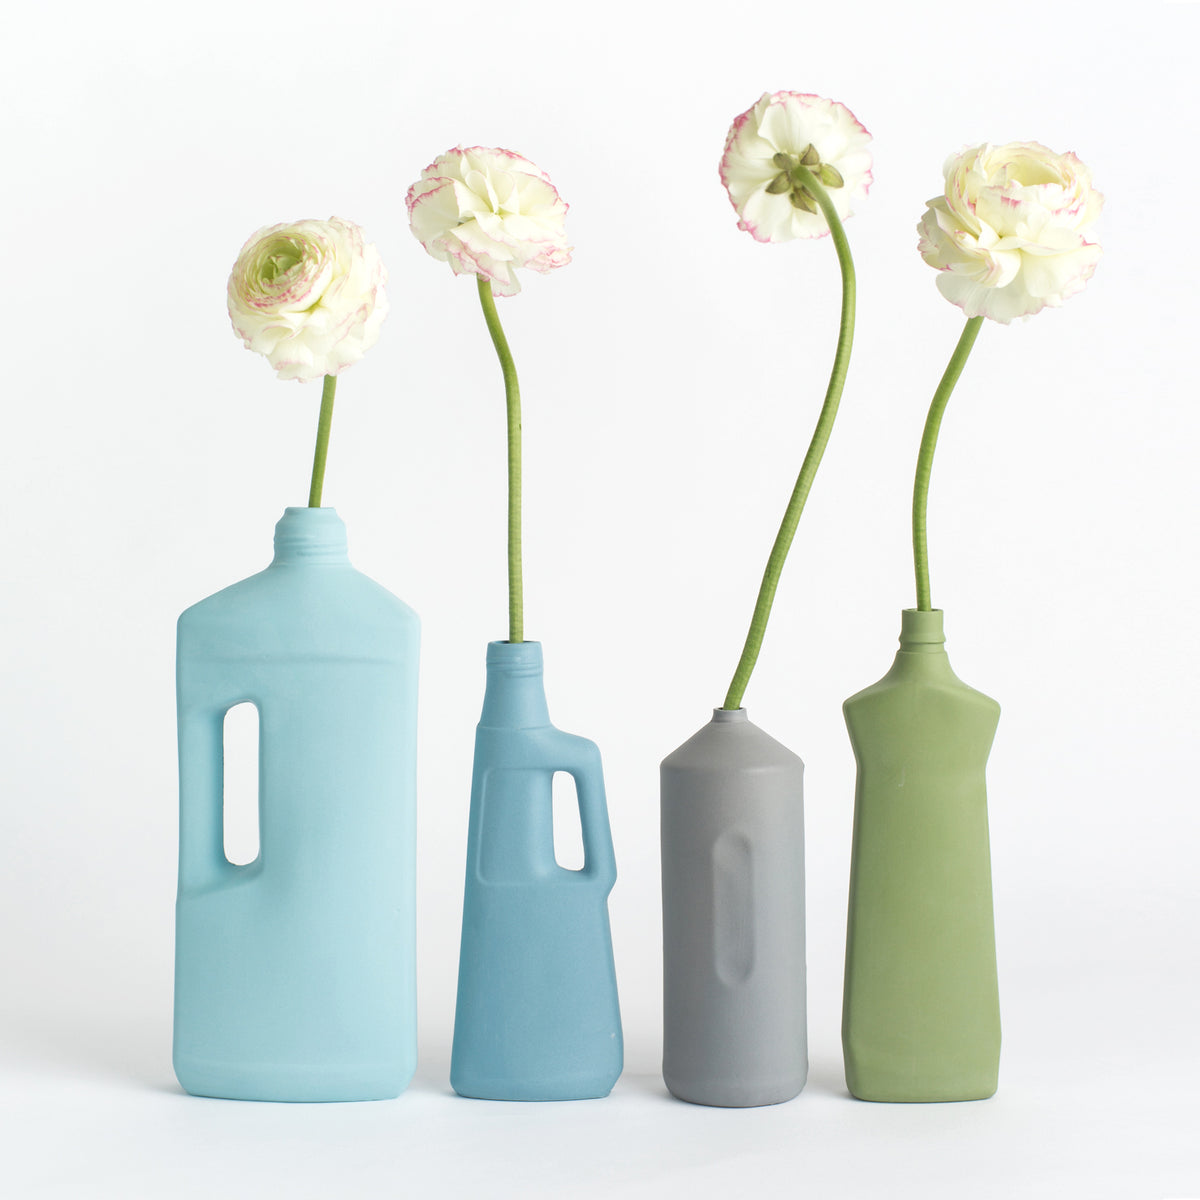 Porzellan-Vase #3 von Foekje Fleur bei Wilhelm die 3.